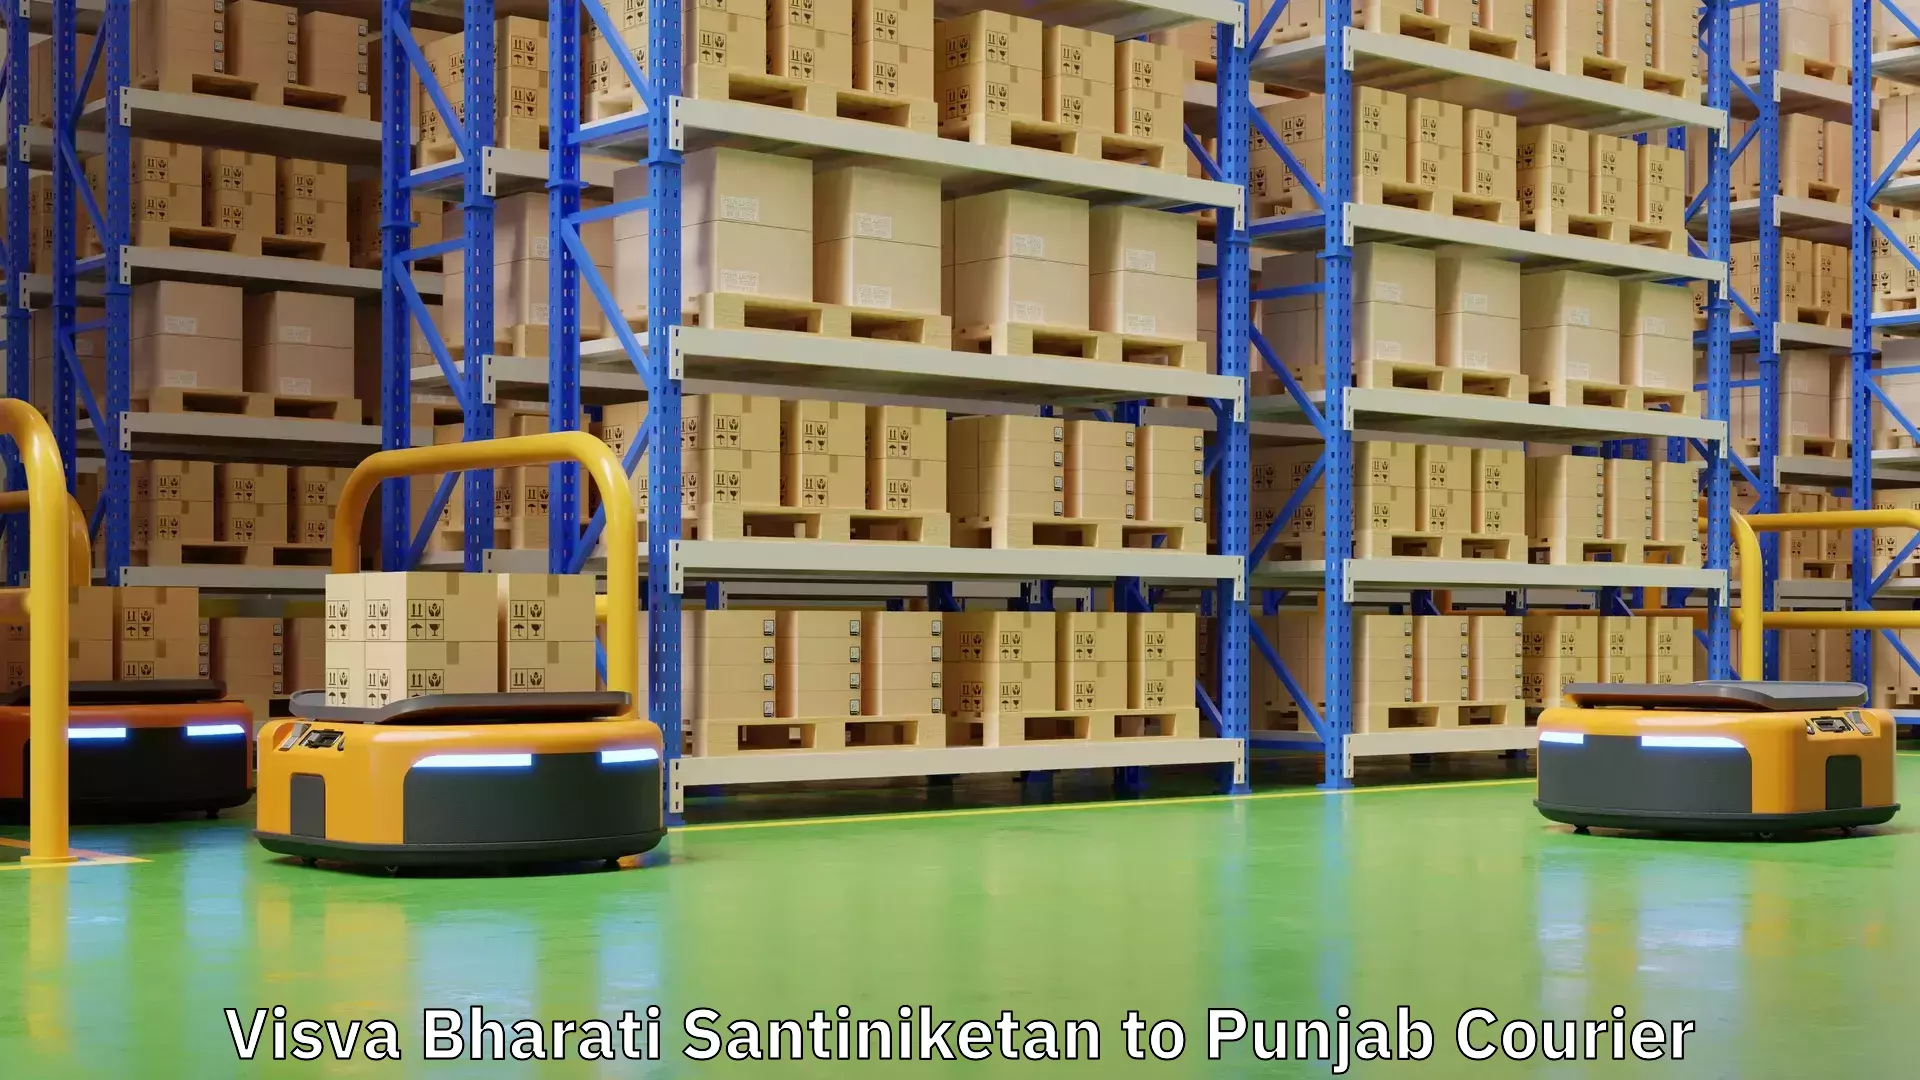 Versatile courier offerings Visva Bharati Santiniketan to Punjab